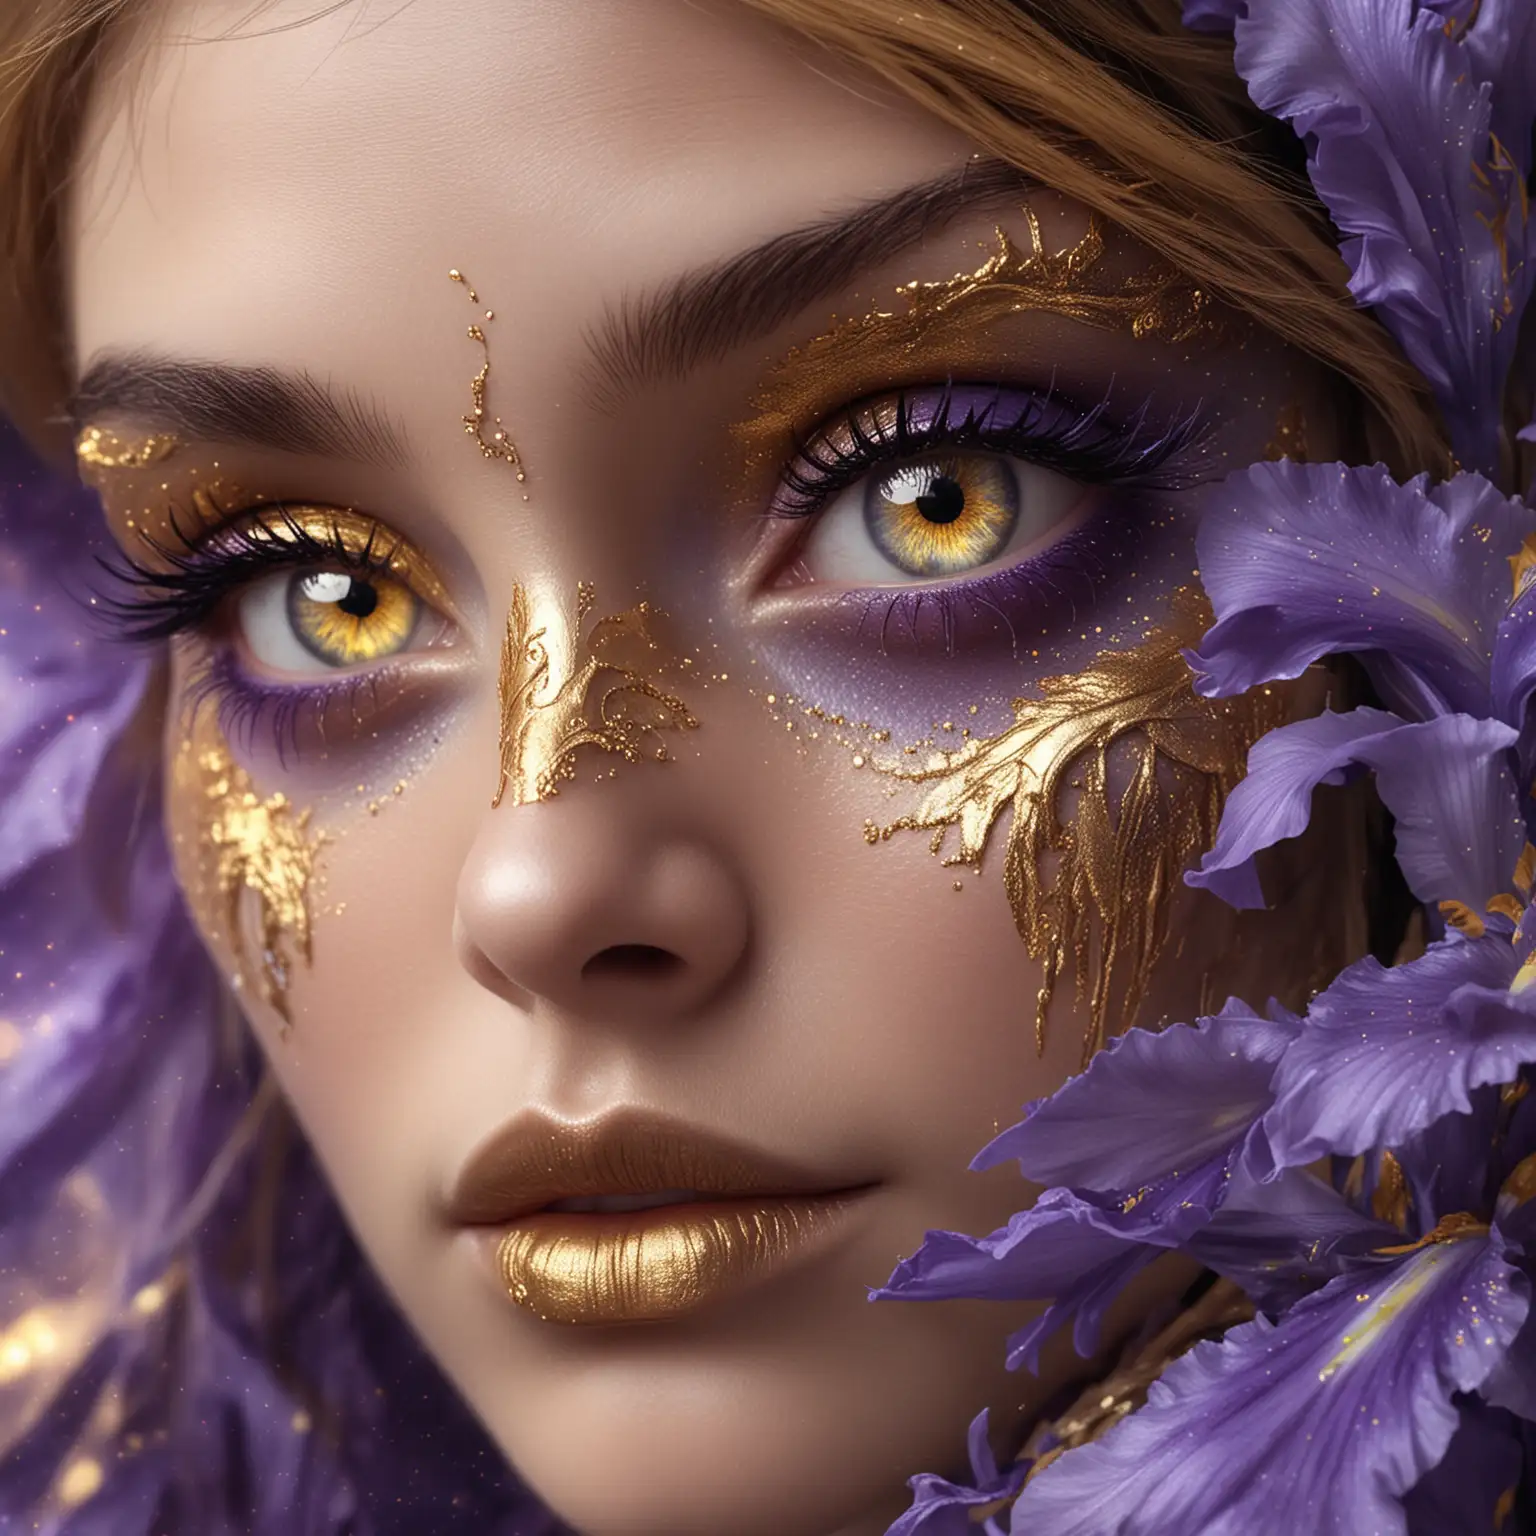 Fantasy Female Eyes with Gold and Lavender Nebulalike Irises